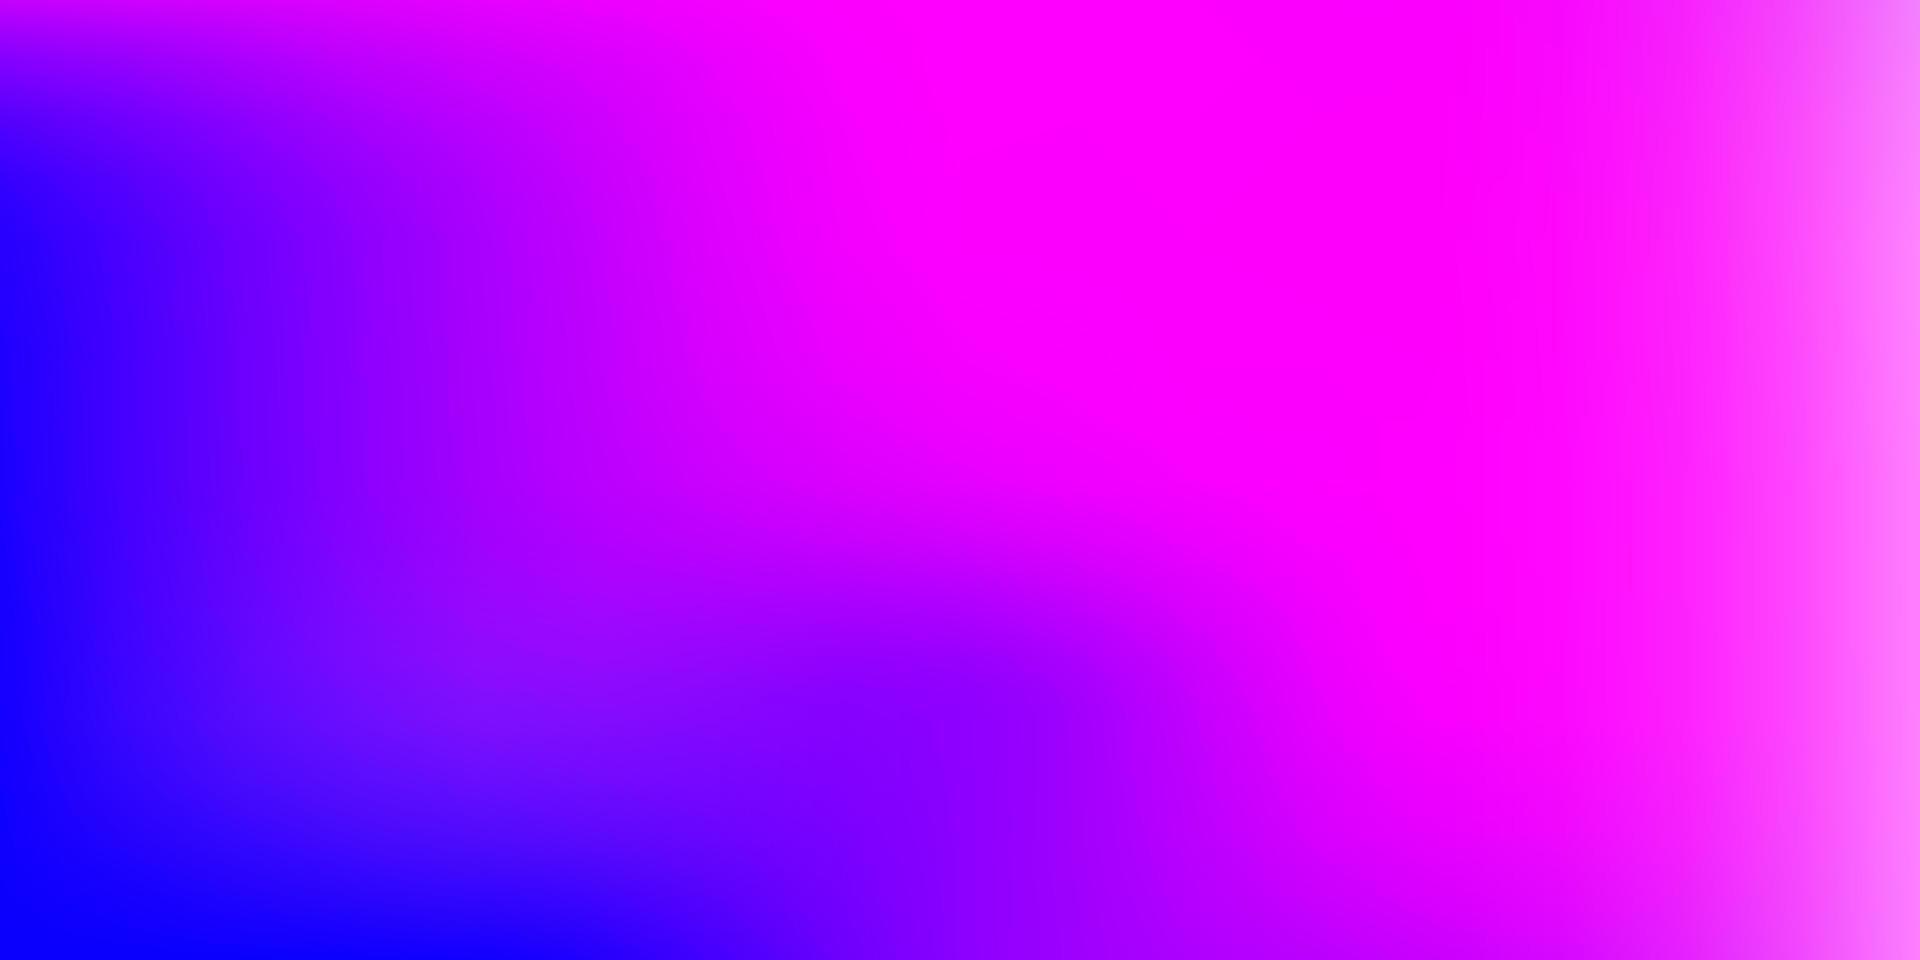 Fondo de desenfoque de vector rosa claro, azul.